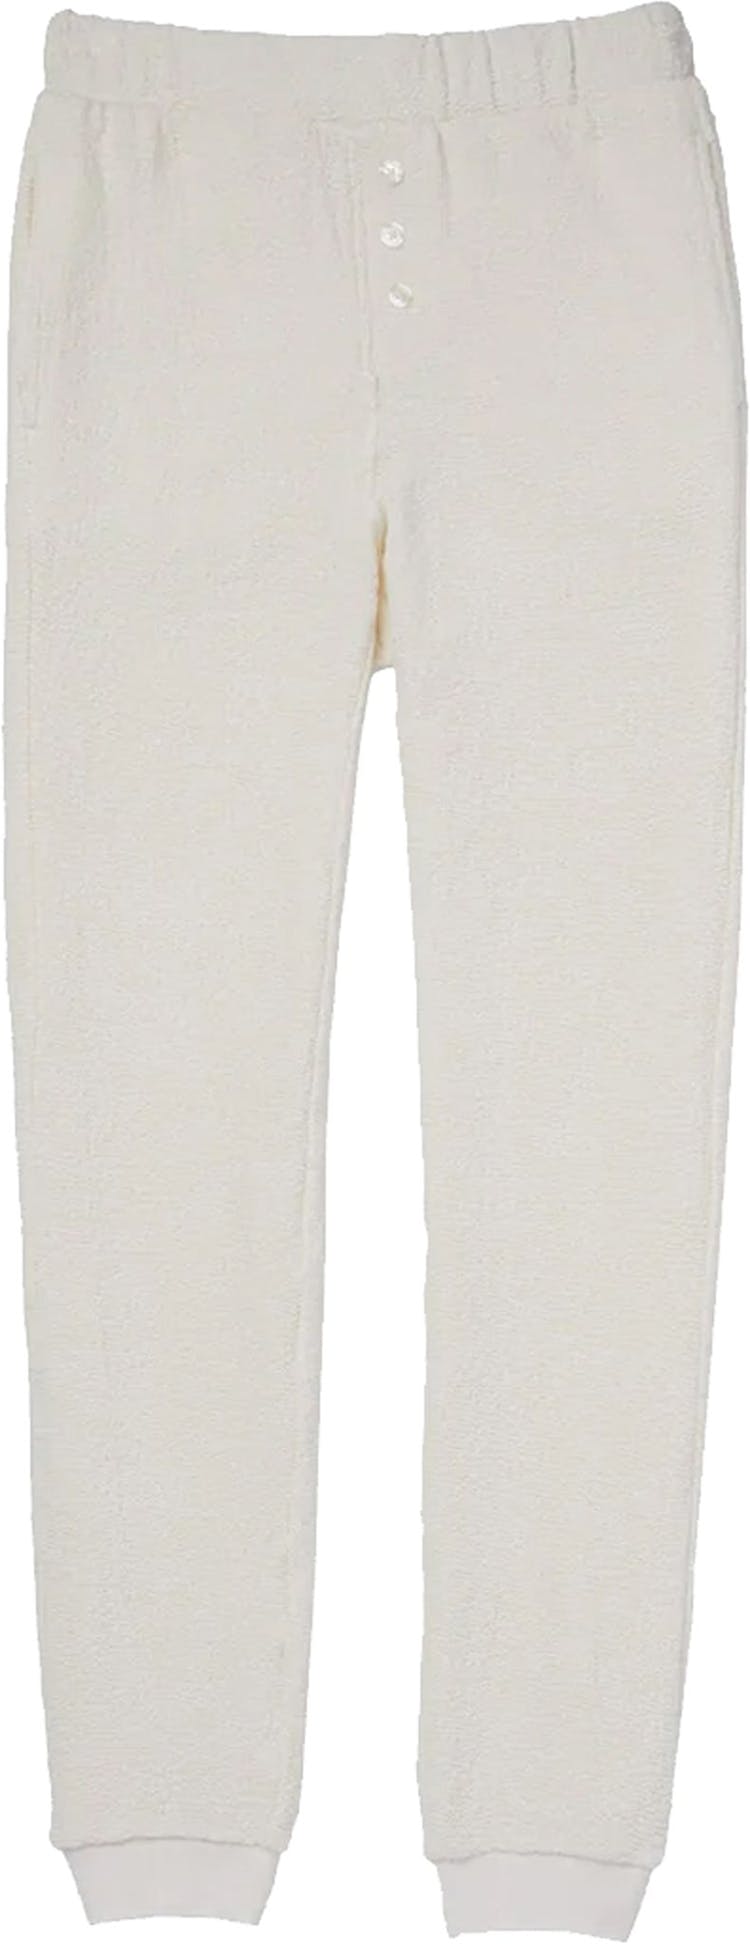 Numéro de l'image de la galerie de produits 1 pour le produit Pantalon Unwind en tricot Bounce - Femme